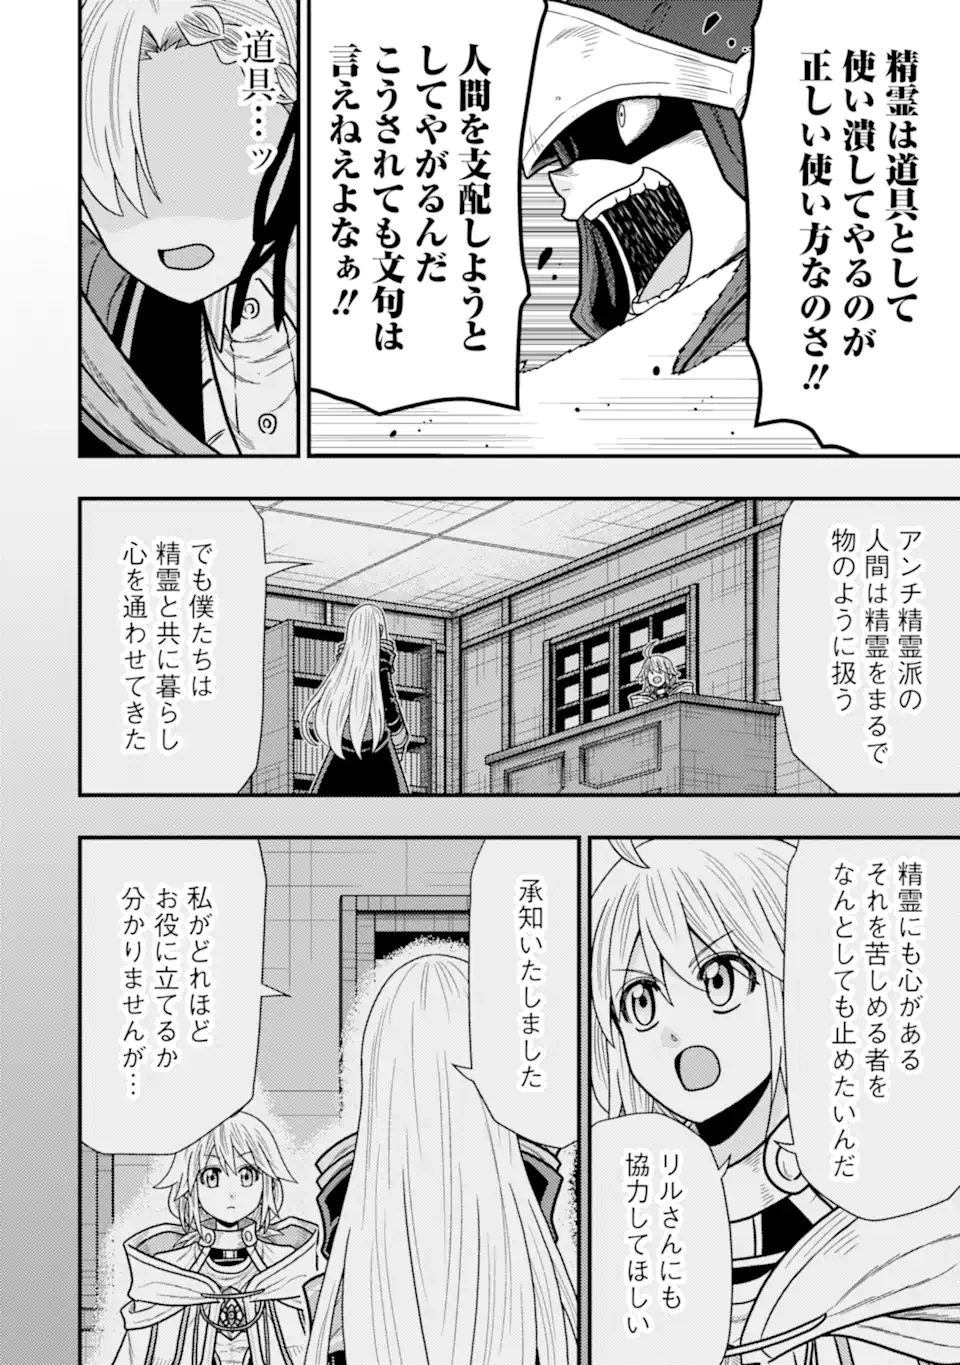 Minikui Tokage no Ko to Ochibureta Moto Kensei - Chapter 15.3 - Page 2